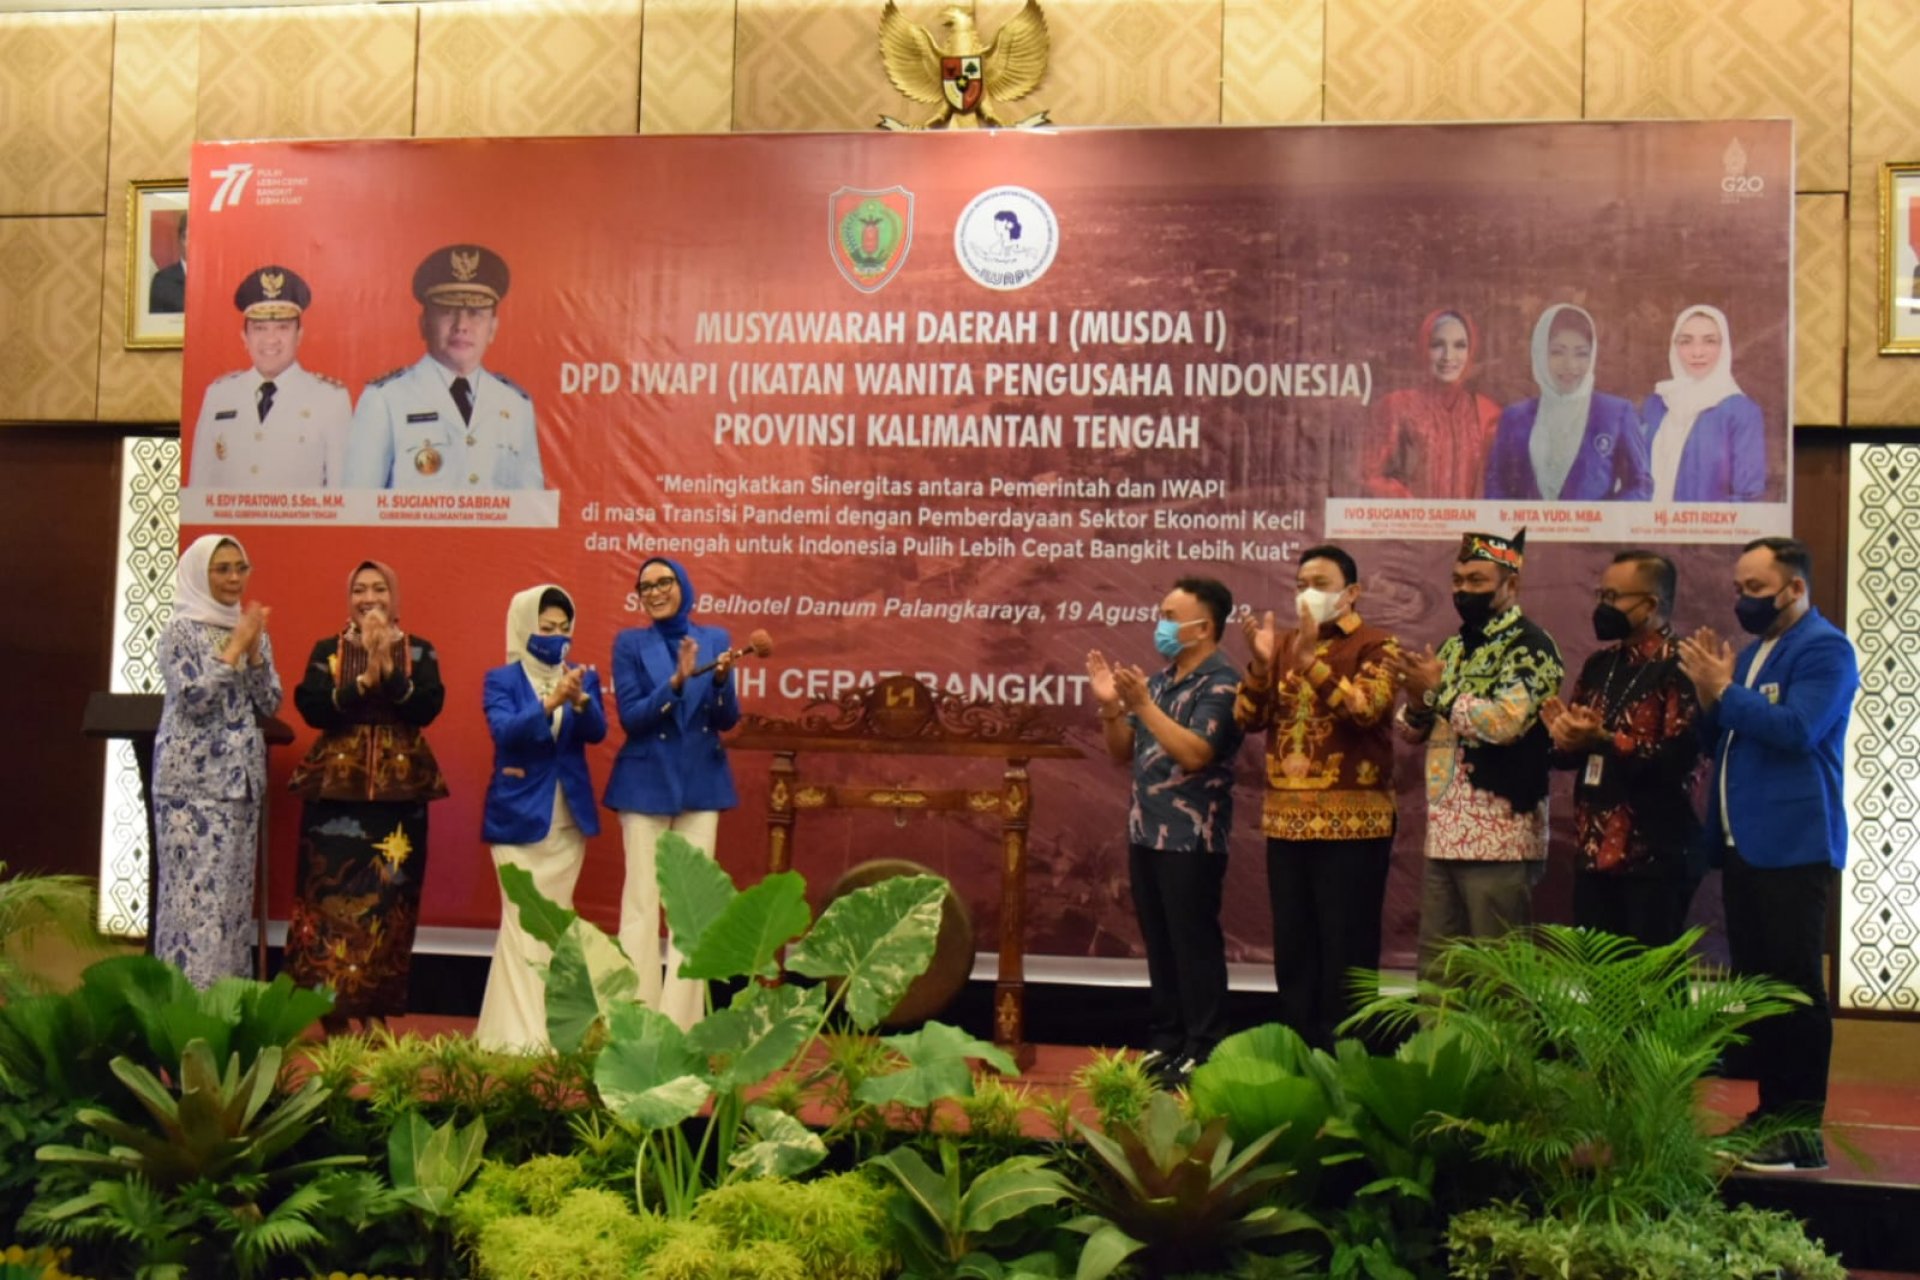 Gubernur Dorong Ikatan Wanita Pengusaha Indonesia Berkontribusi Gerakkan Ekonomi Kalteng